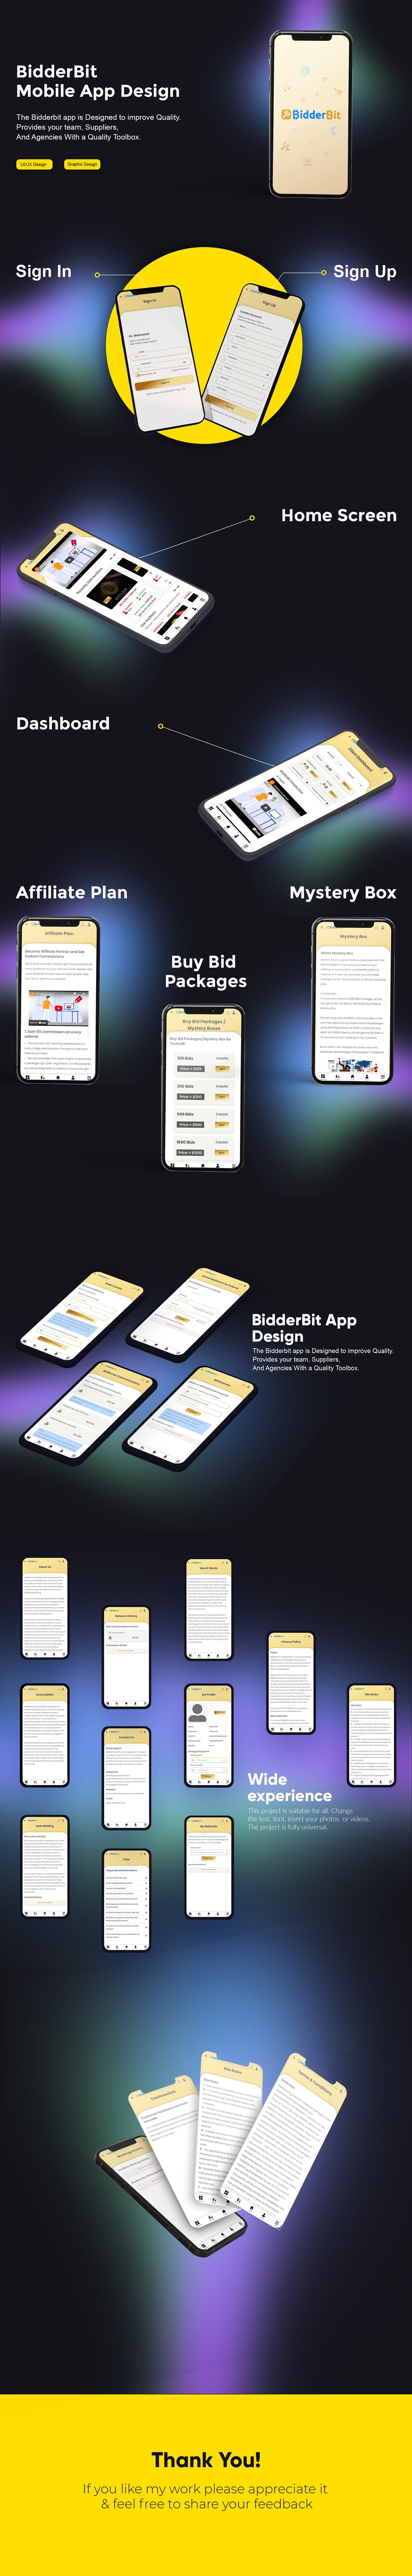 app design Figma Mobile app UI/UX